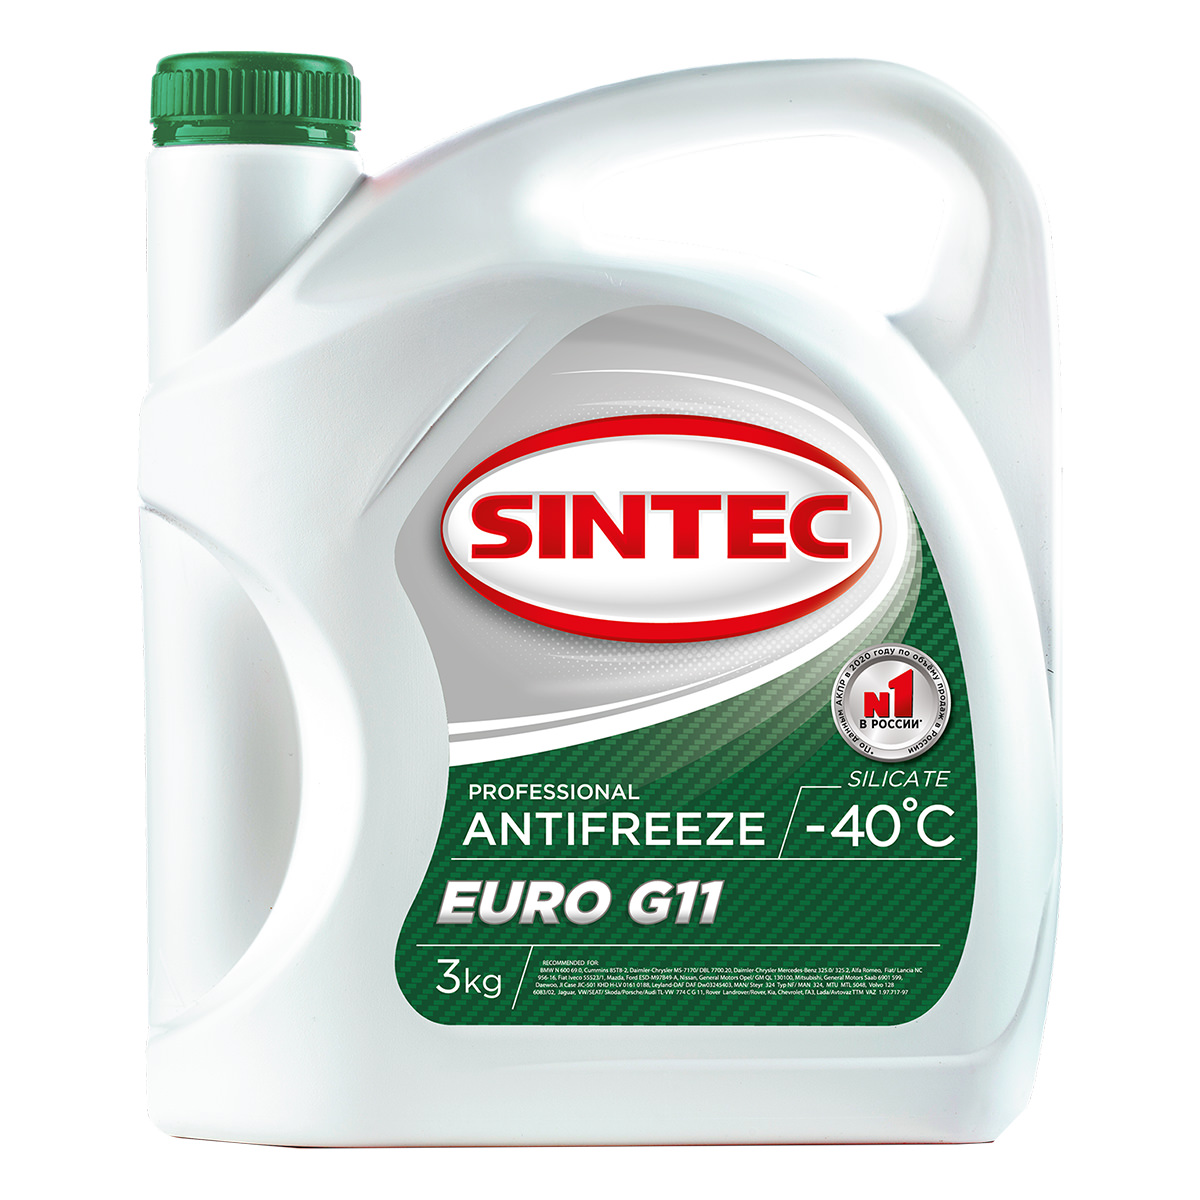 Антифриз SINTEC EURO G11 - 40°C зеленый 3кг.